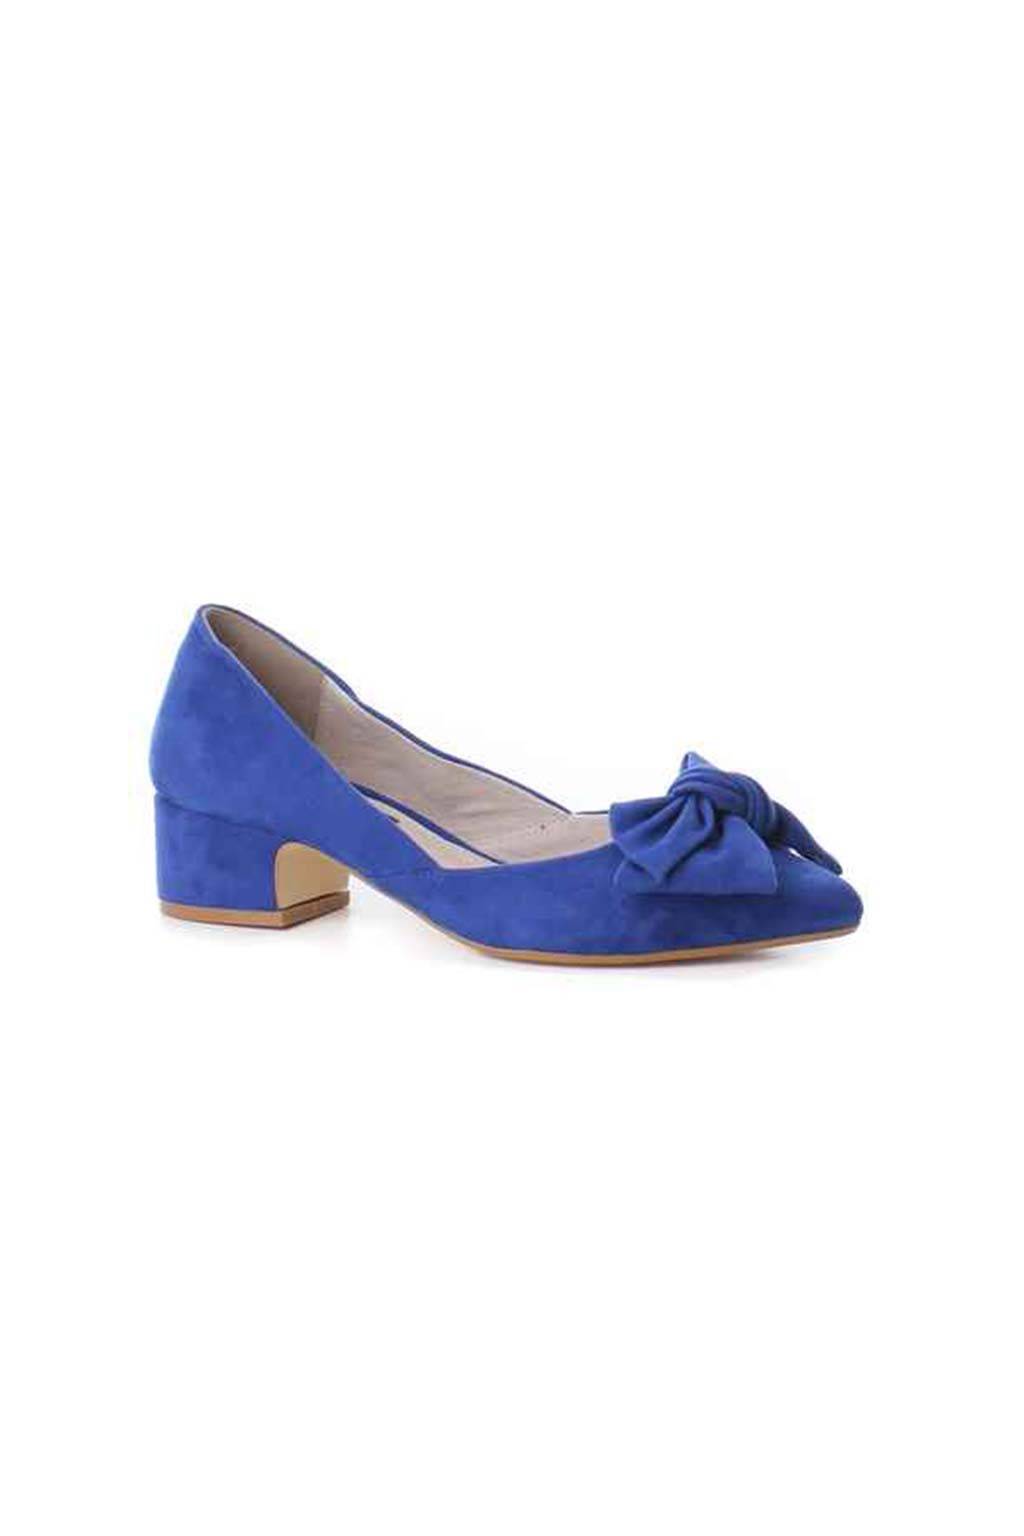 Zapato Xti 30750 Azul medinapiel.es